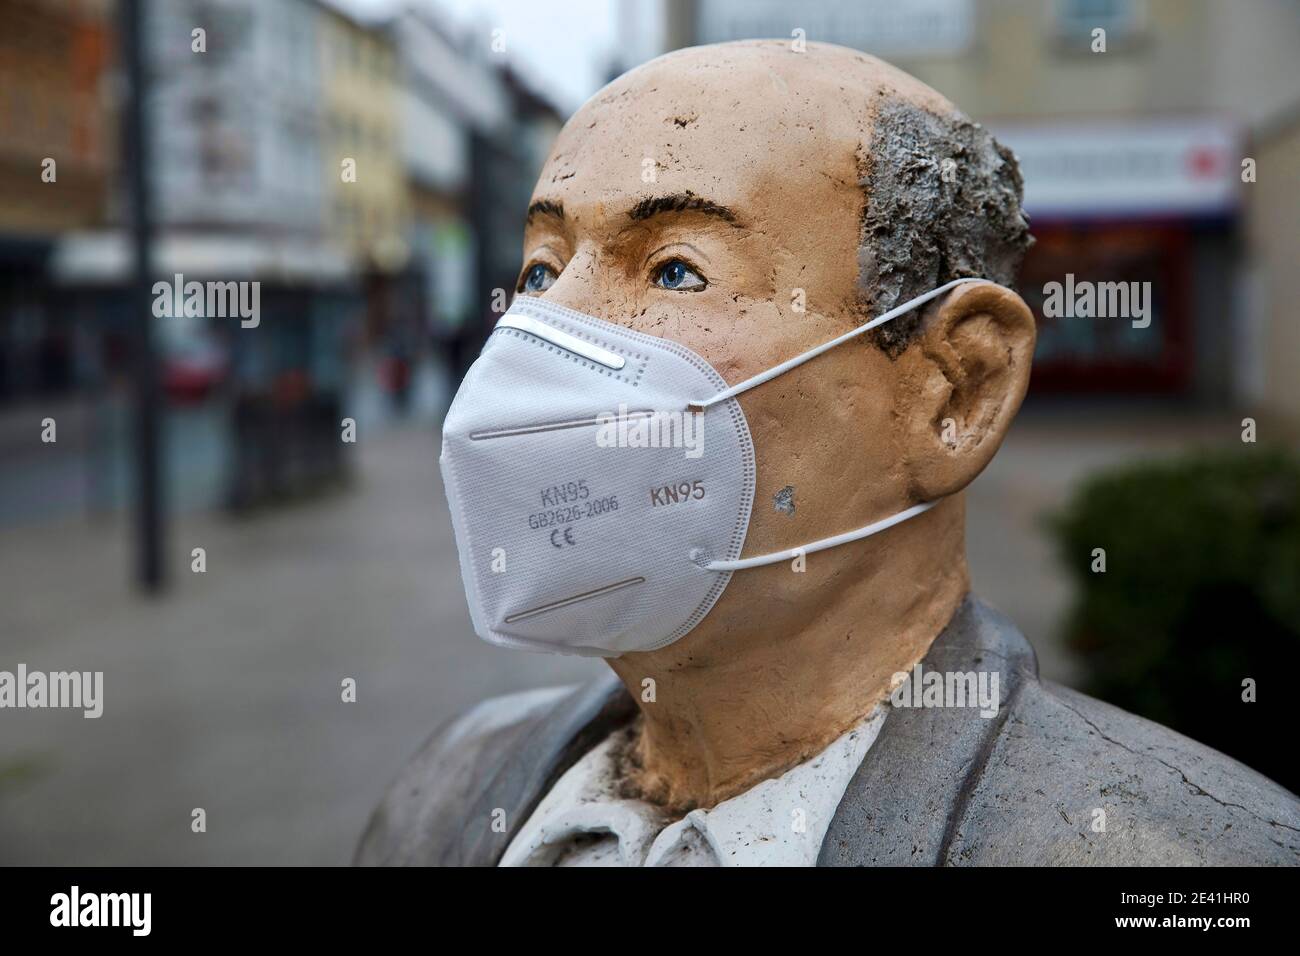 Sculpture mâle avec masque FFP2 pendant la pandémie de corona, Allemagne, Rhénanie-du-Nord-Westphalie, région de la Ruhr, Witten Banque D'Images